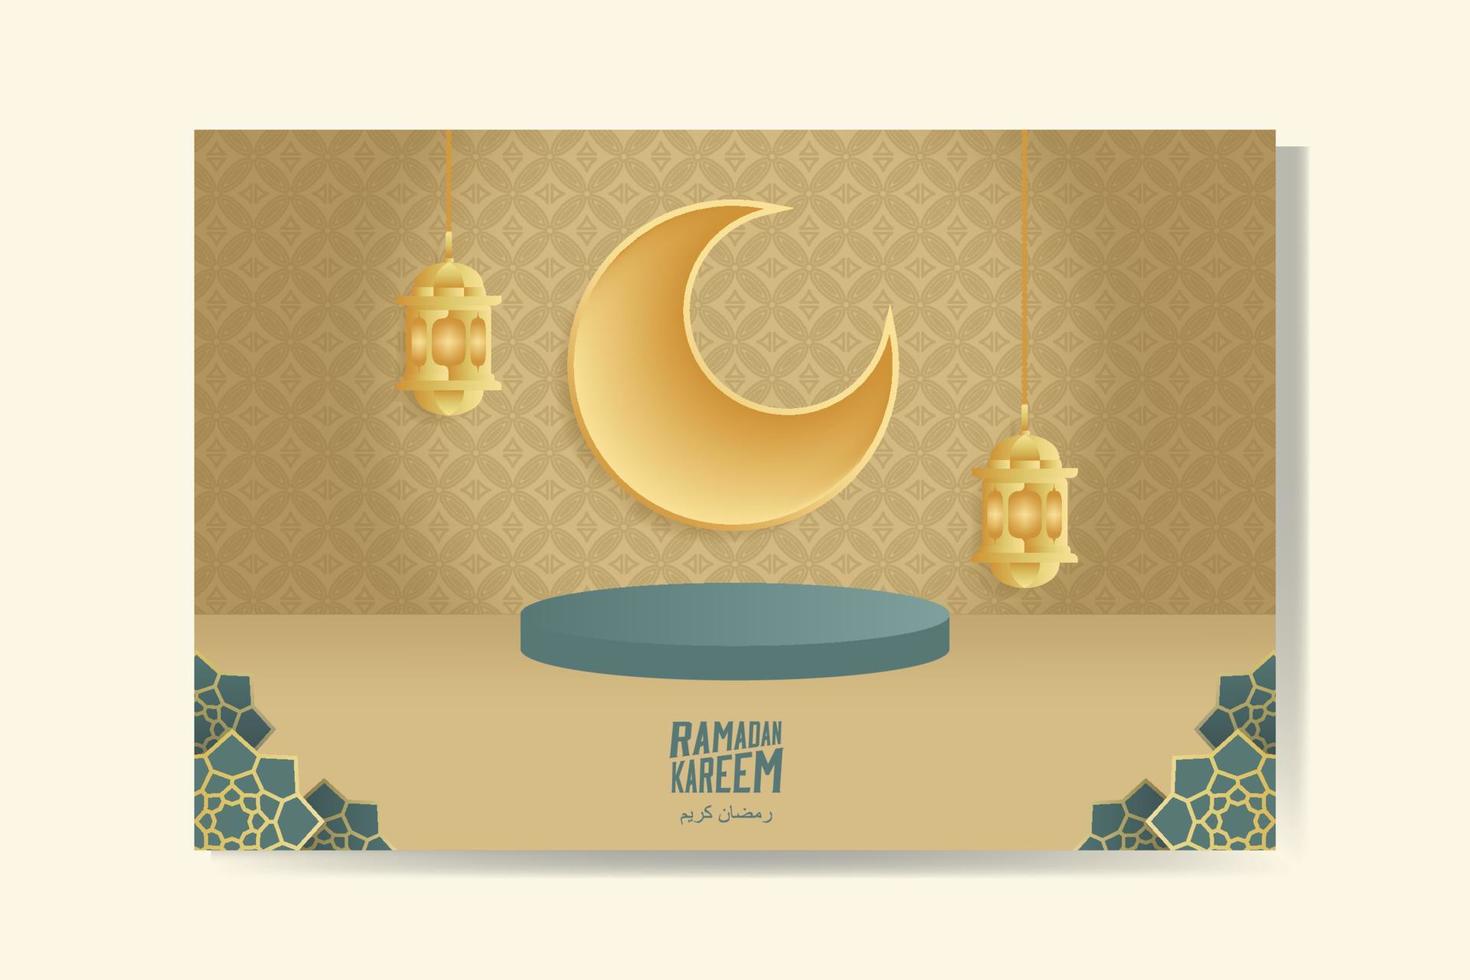 Ramadan kareem groet kaart met goud halve maan maan en lantaarn Ramadan mubarak. achtergrond vector illustratie.